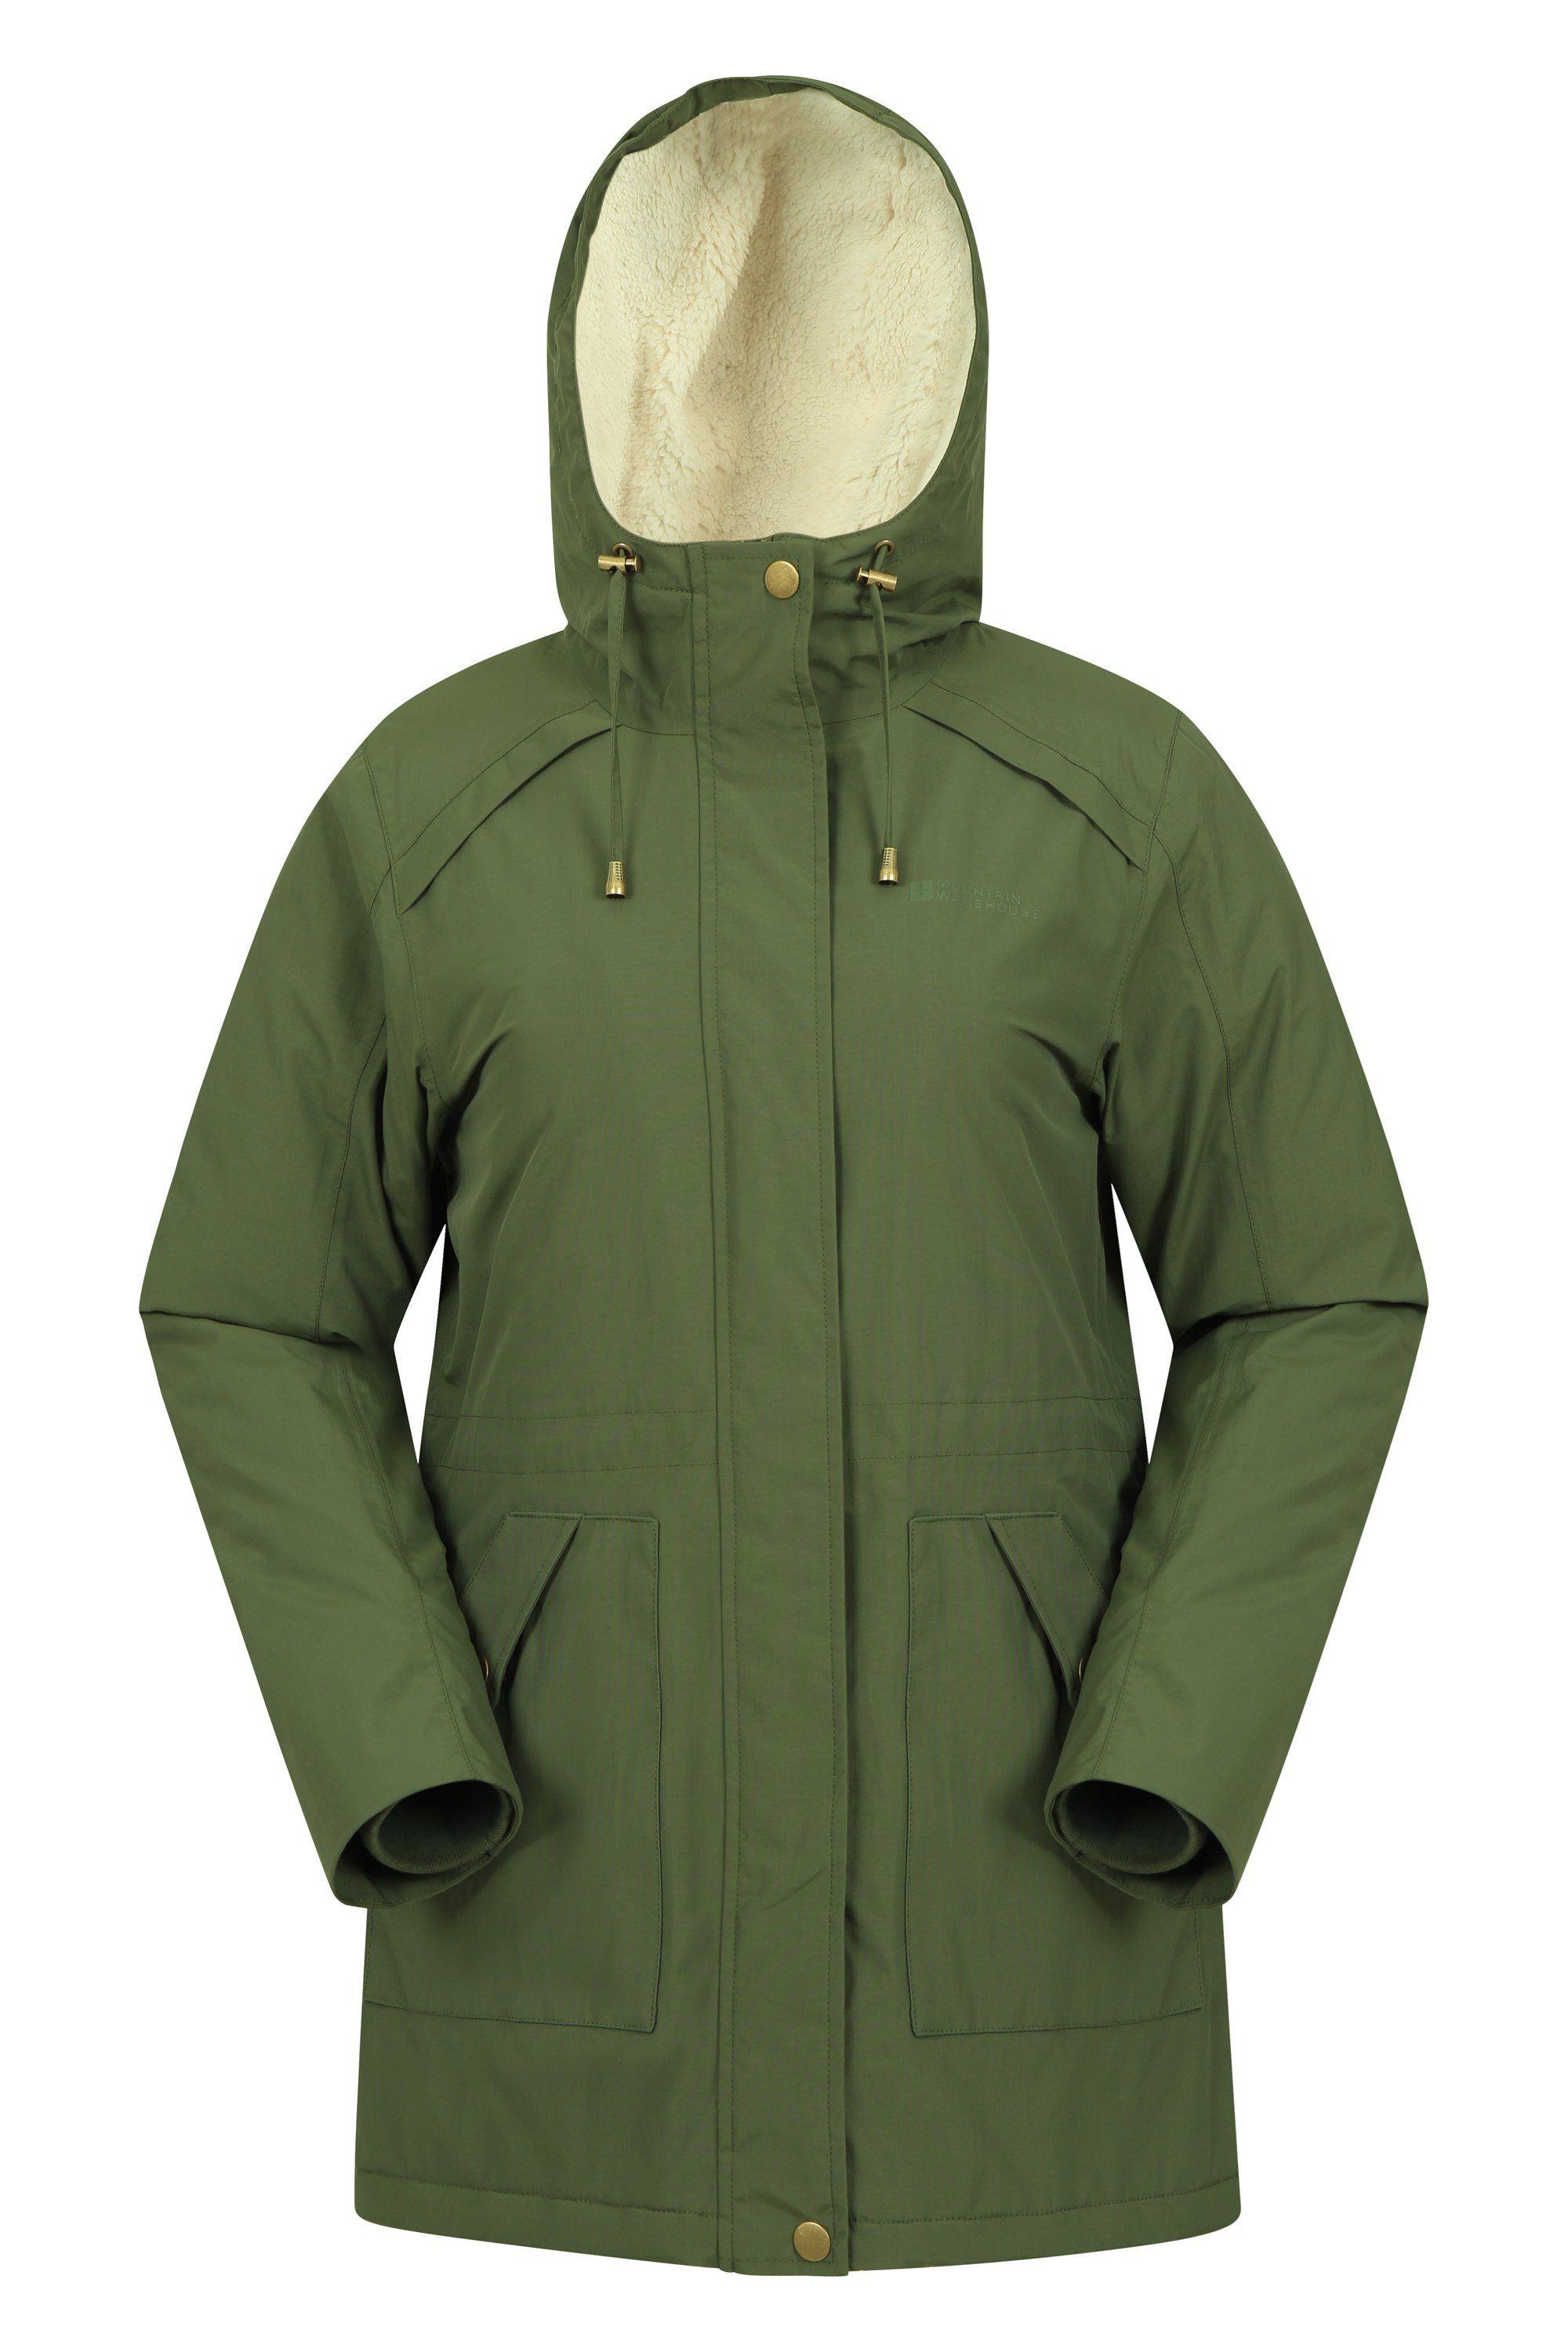 Transatlantic Womens Waterproof Jacket - Green